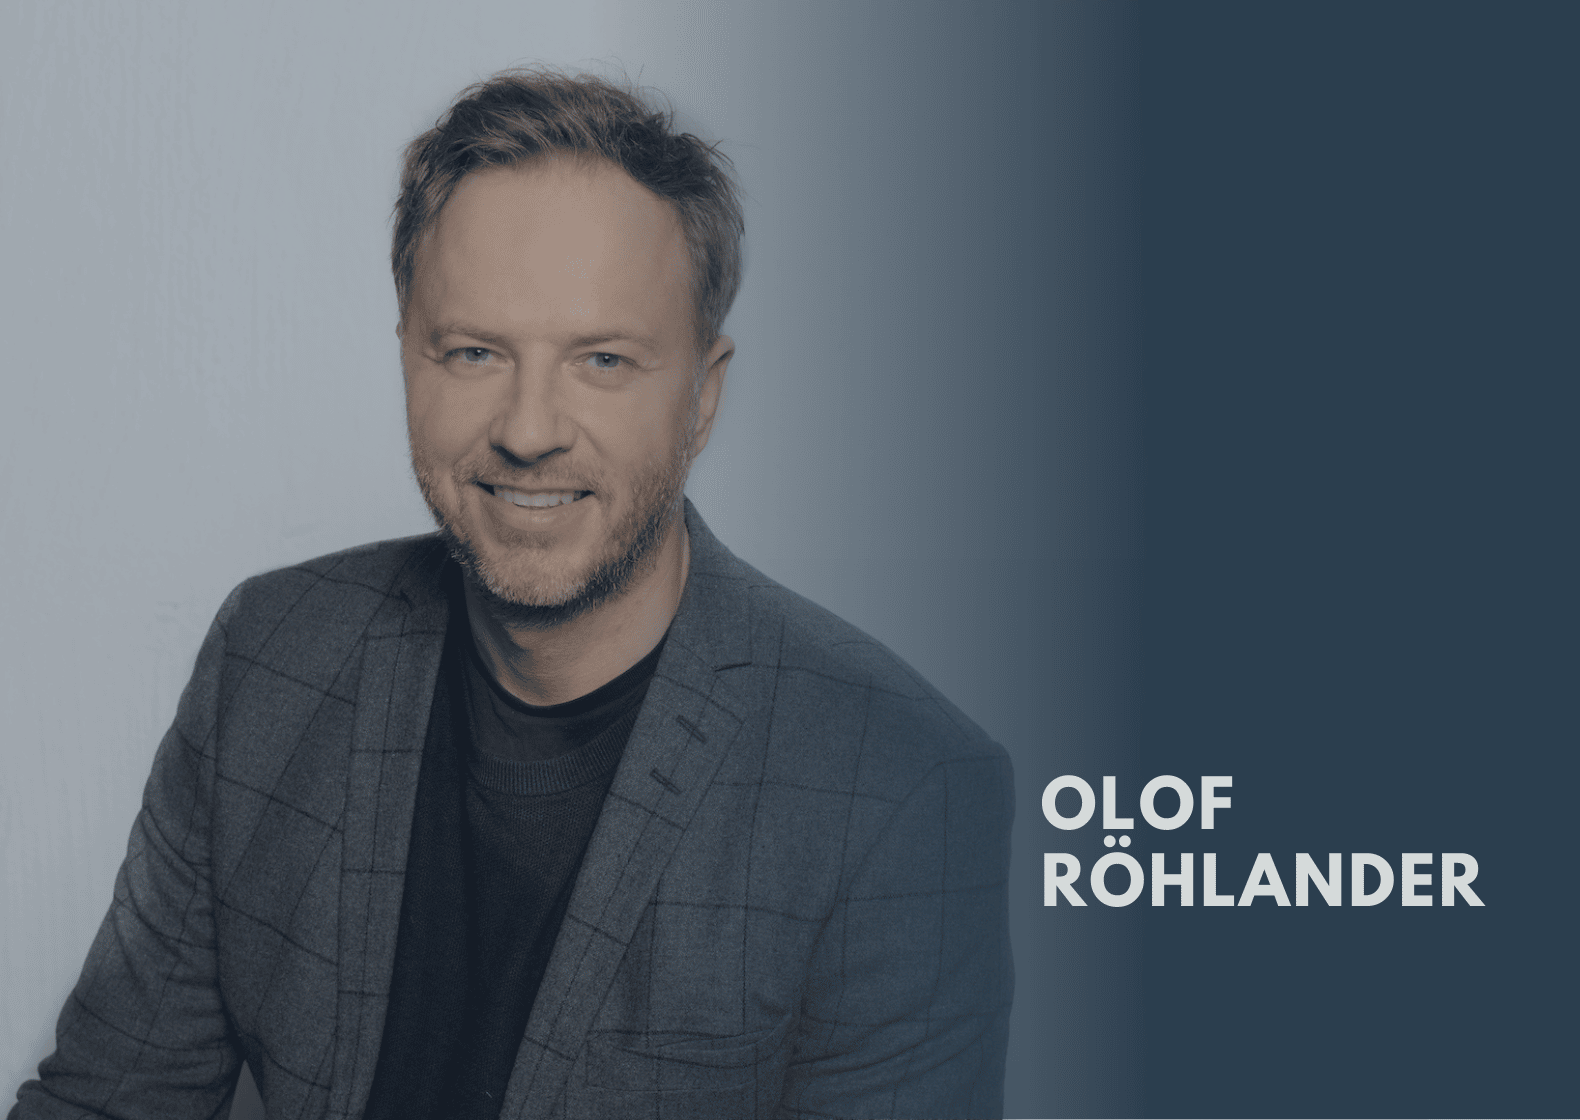 Lackmustestet på ditt mående av Olof Röhlander